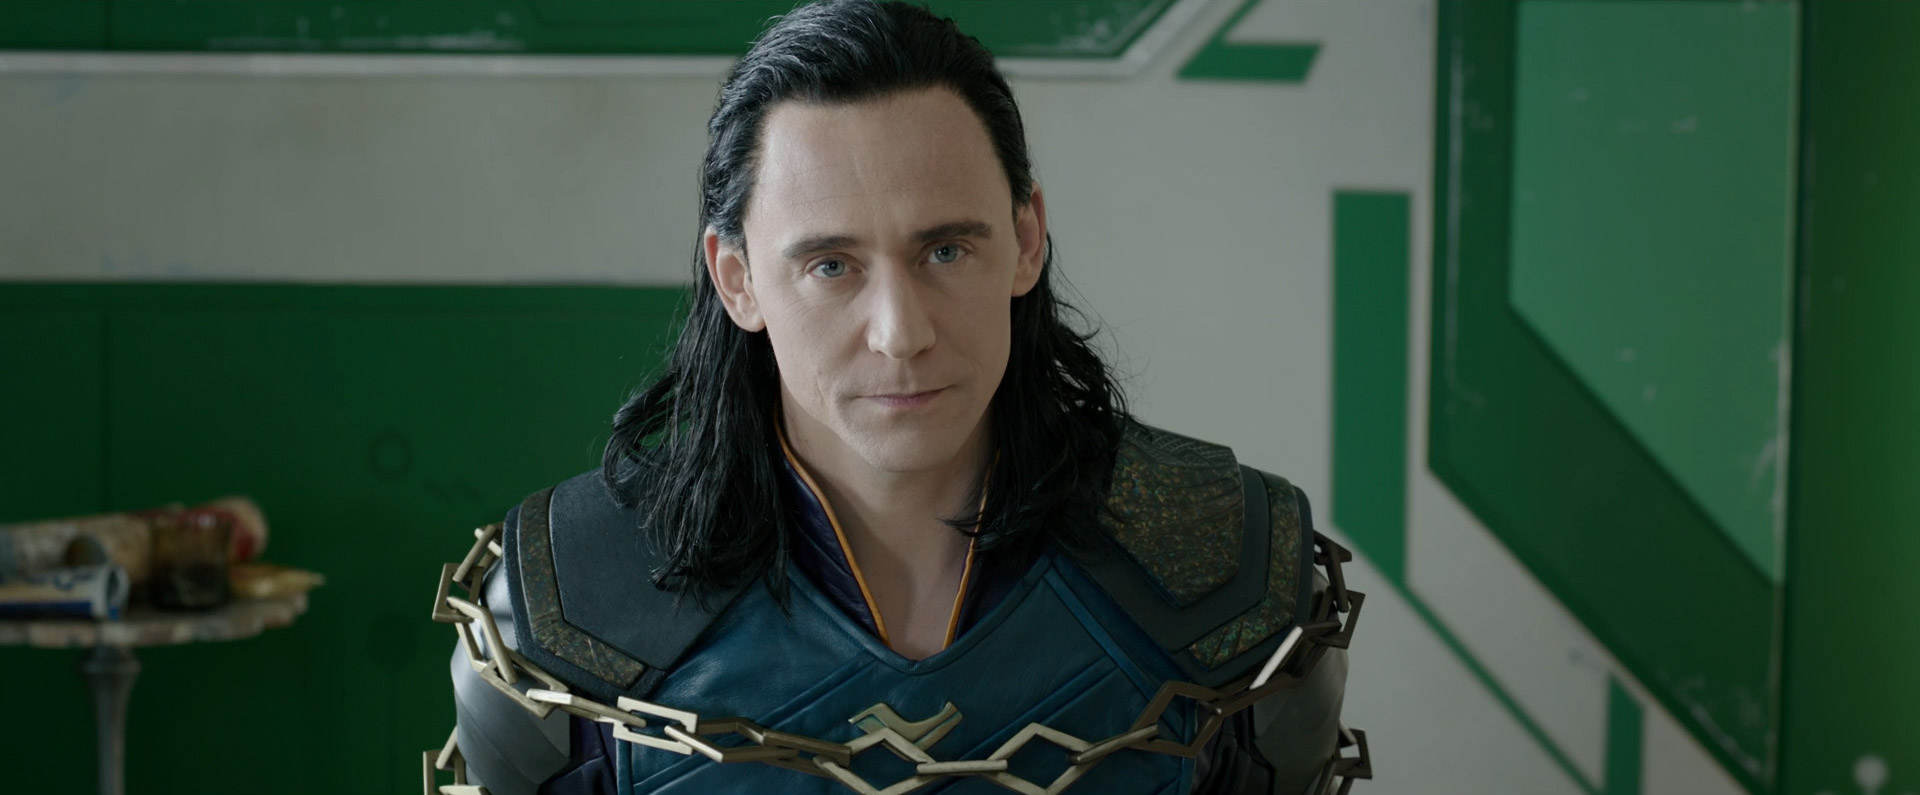 Nhiều khả năng Loki sẽ bỏ mạng ngay đoạn đầu Avengers: Infinity War